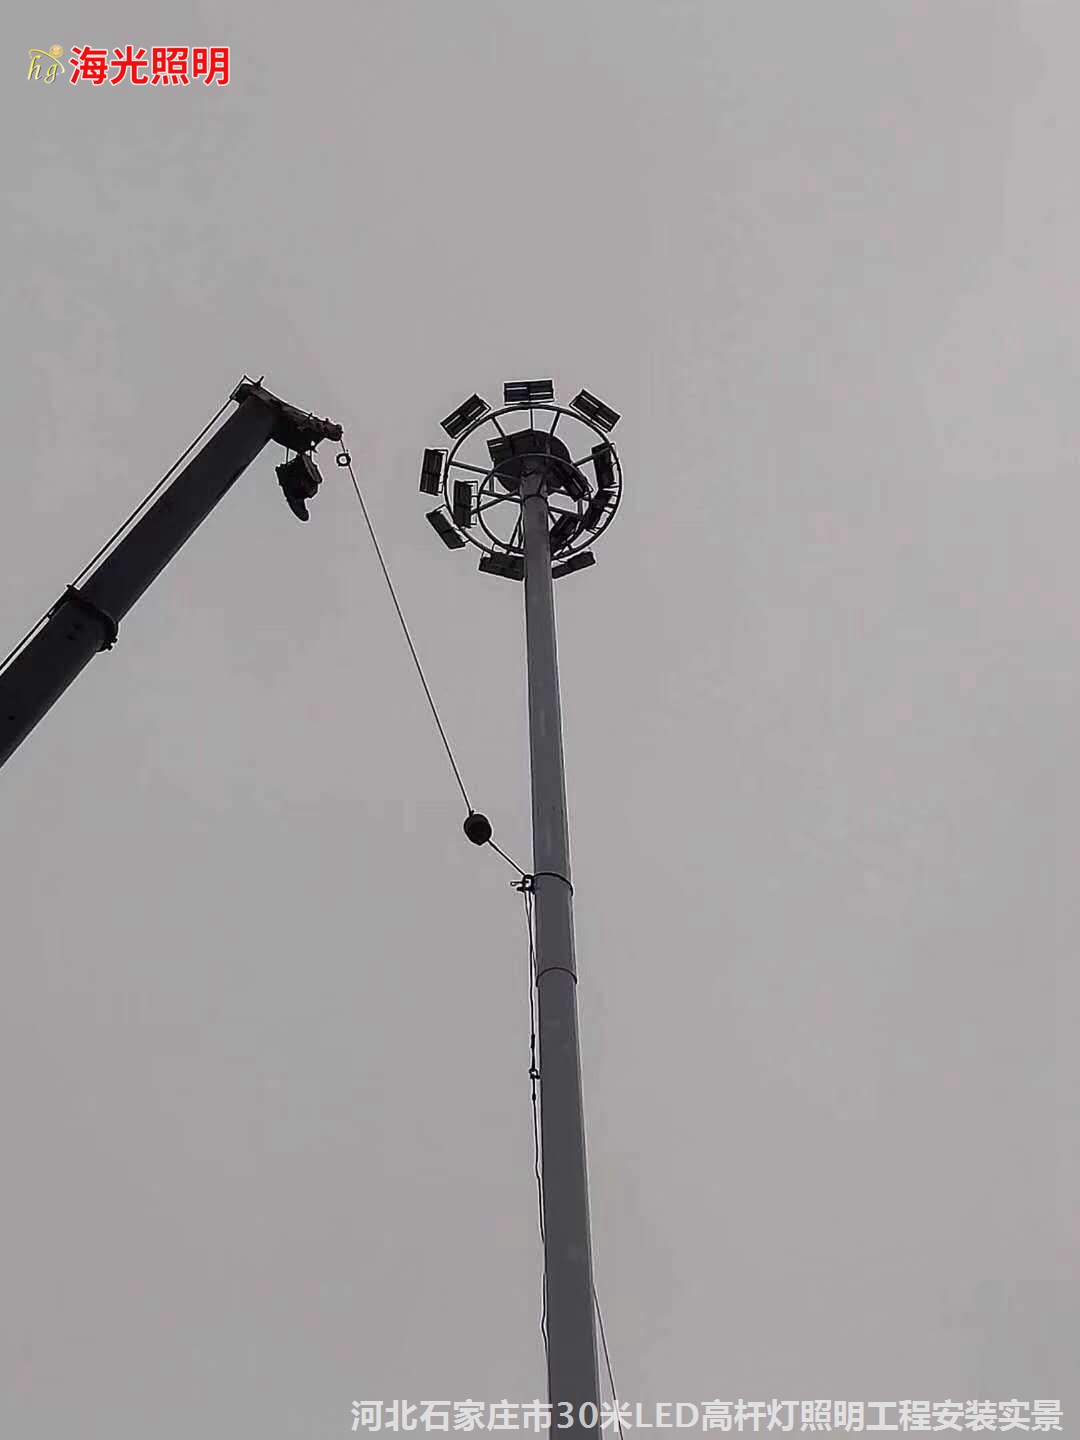 河北石家庄市30米LED高杆灯照明工程